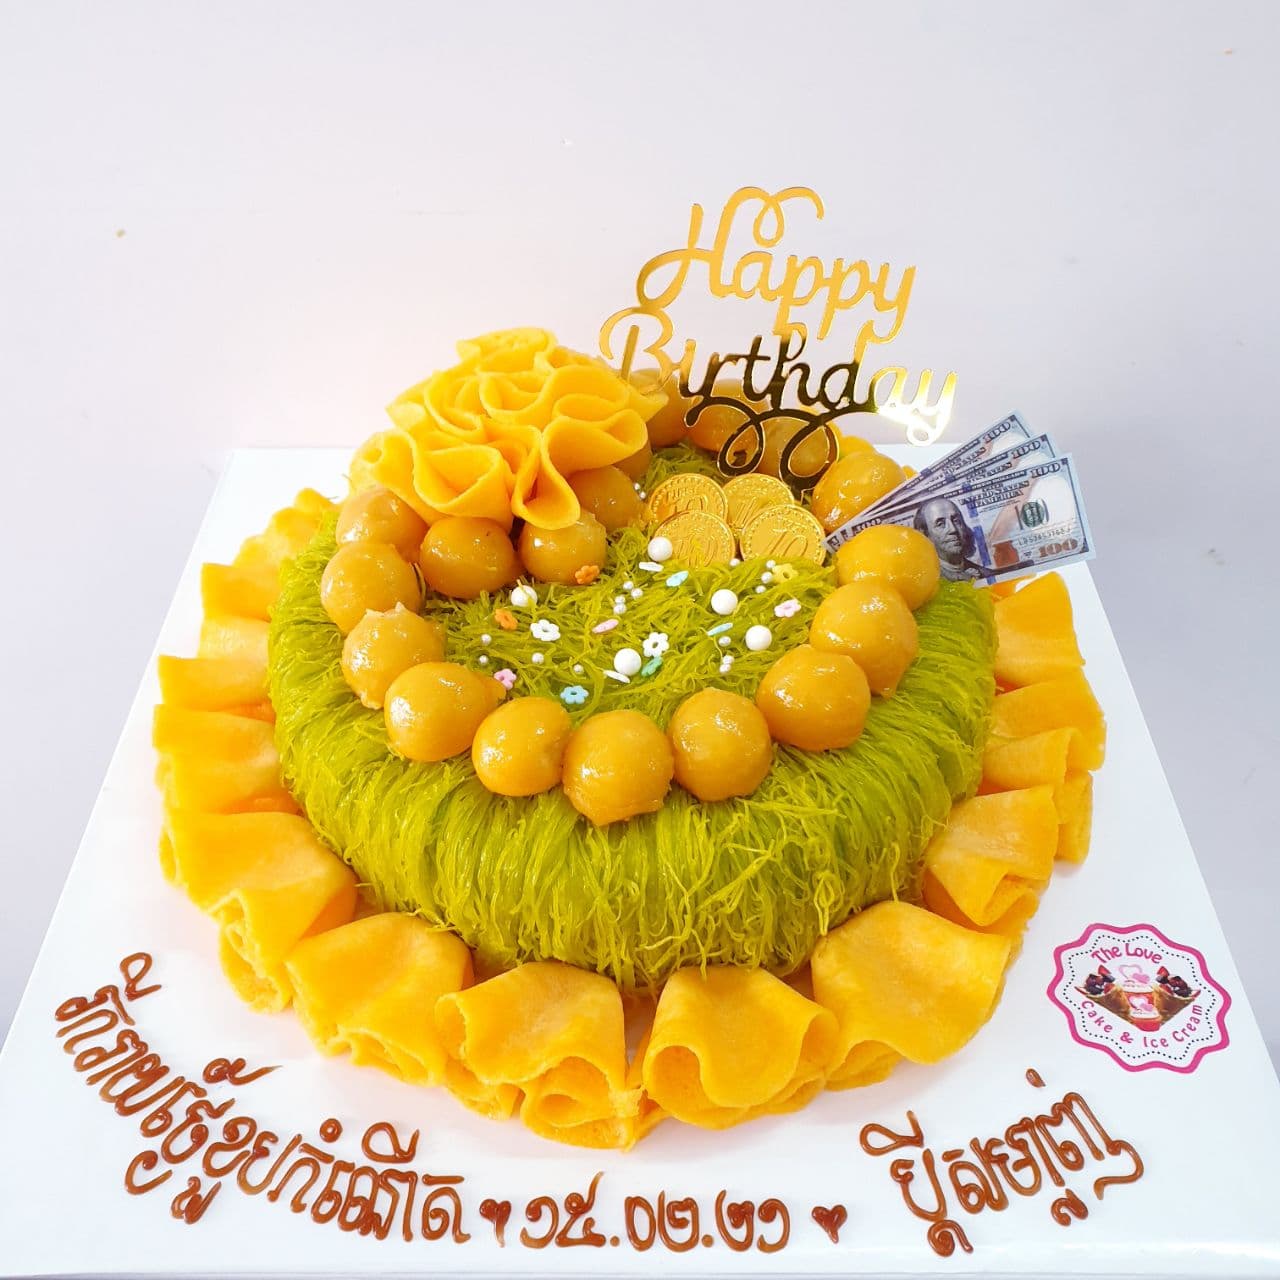 13.Round Green Cake with Round Jackfruit